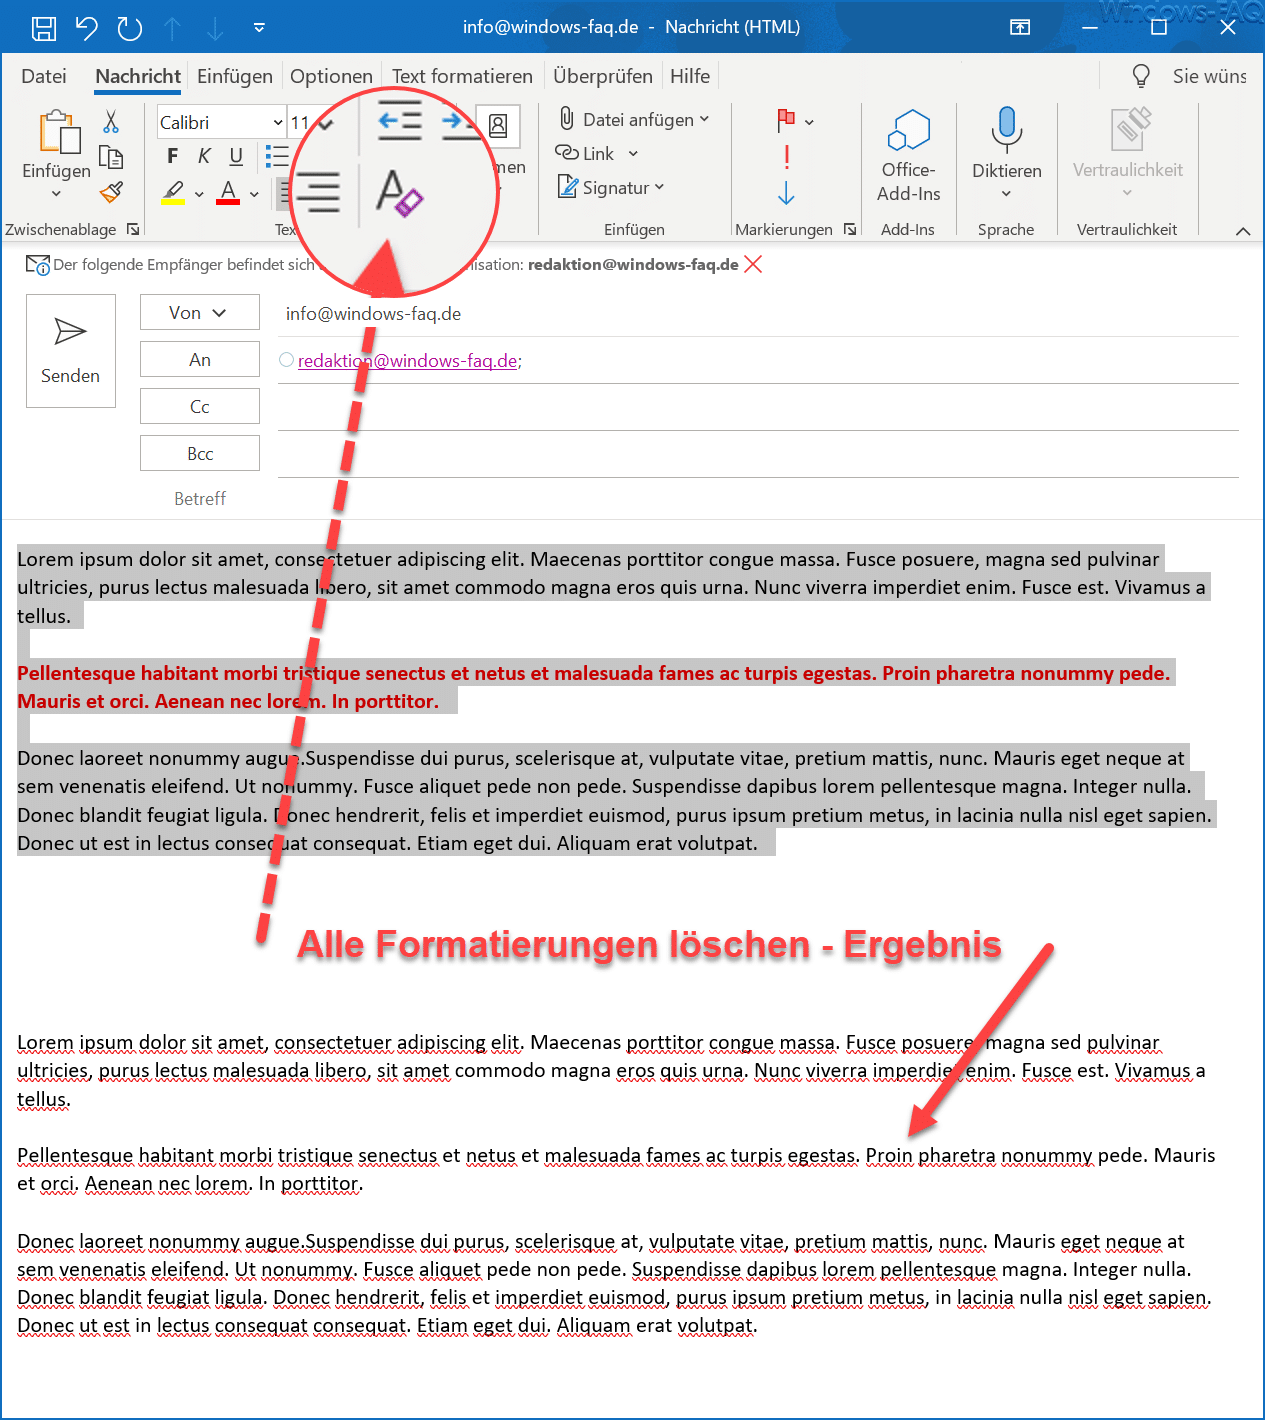 Überprüfen Sie die E-Mail-Formatierung: Manchmal kann eine fehlerhafte E-Mail-Formatierung dazu führen, dass die Outlook-Signatur nicht funktioniert. Überprüfen Sie Ihre Formatierungseinstellungen.
Reparieren Sie Ihr Outlook-Profil: Eine beschädigte Outlook-Profildatei kann zu Problemen mit der Signatur führen. Versuchen Sie, Ihr Outlook-Profil zu reparieren, um das Problem zu beheben.